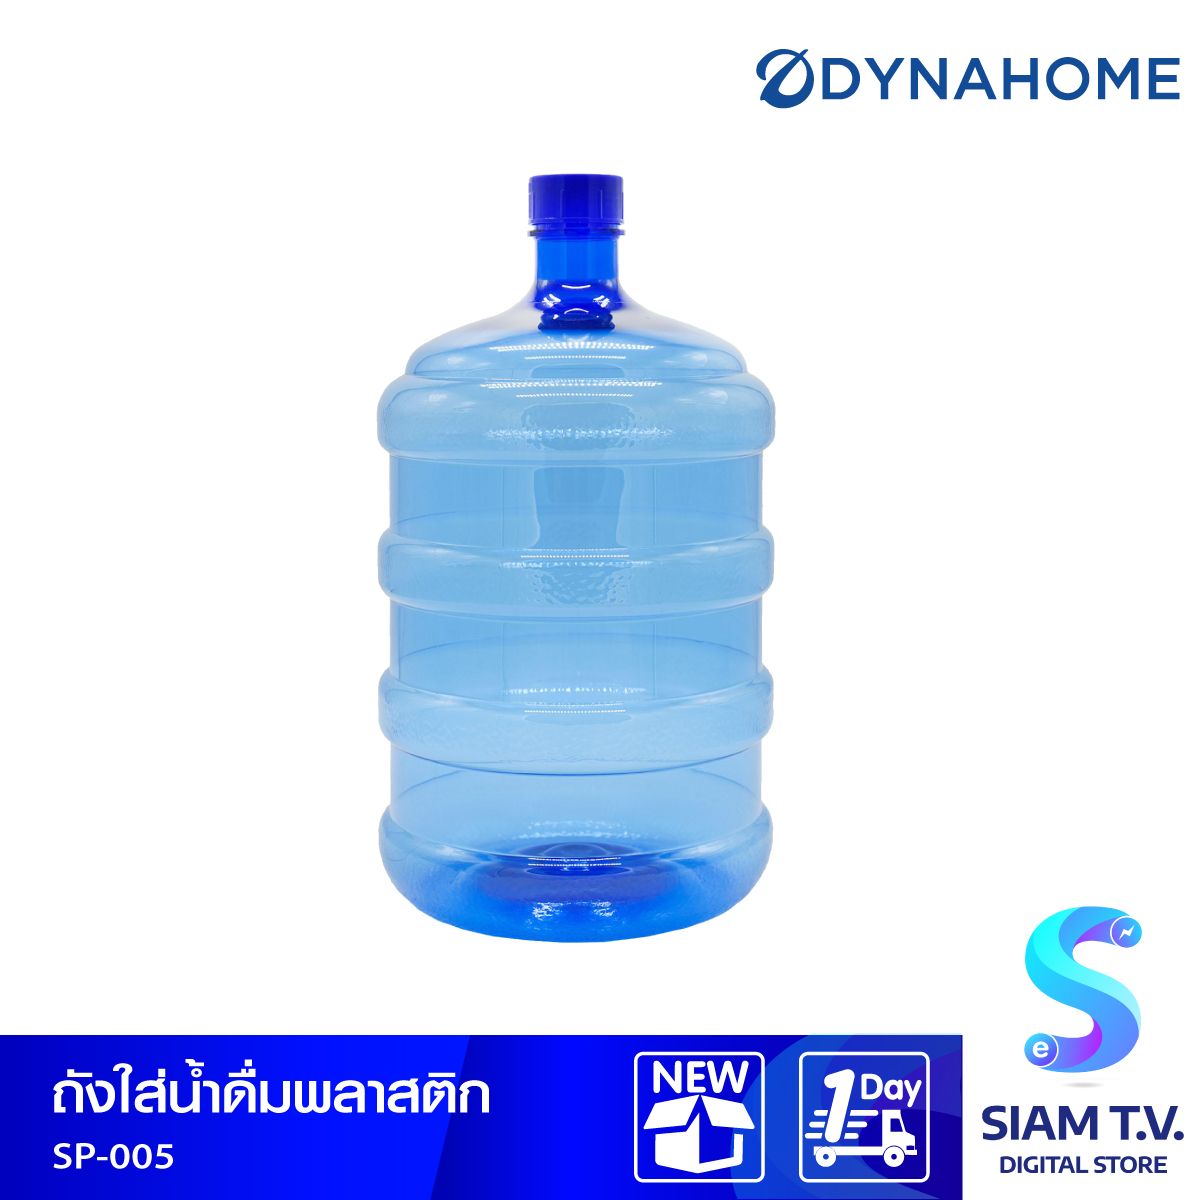 ถังน้ำดื่มทรงกลม DYNAHOME รุ่น SP-005  ขนาด 18.9 ลิตร สีใส